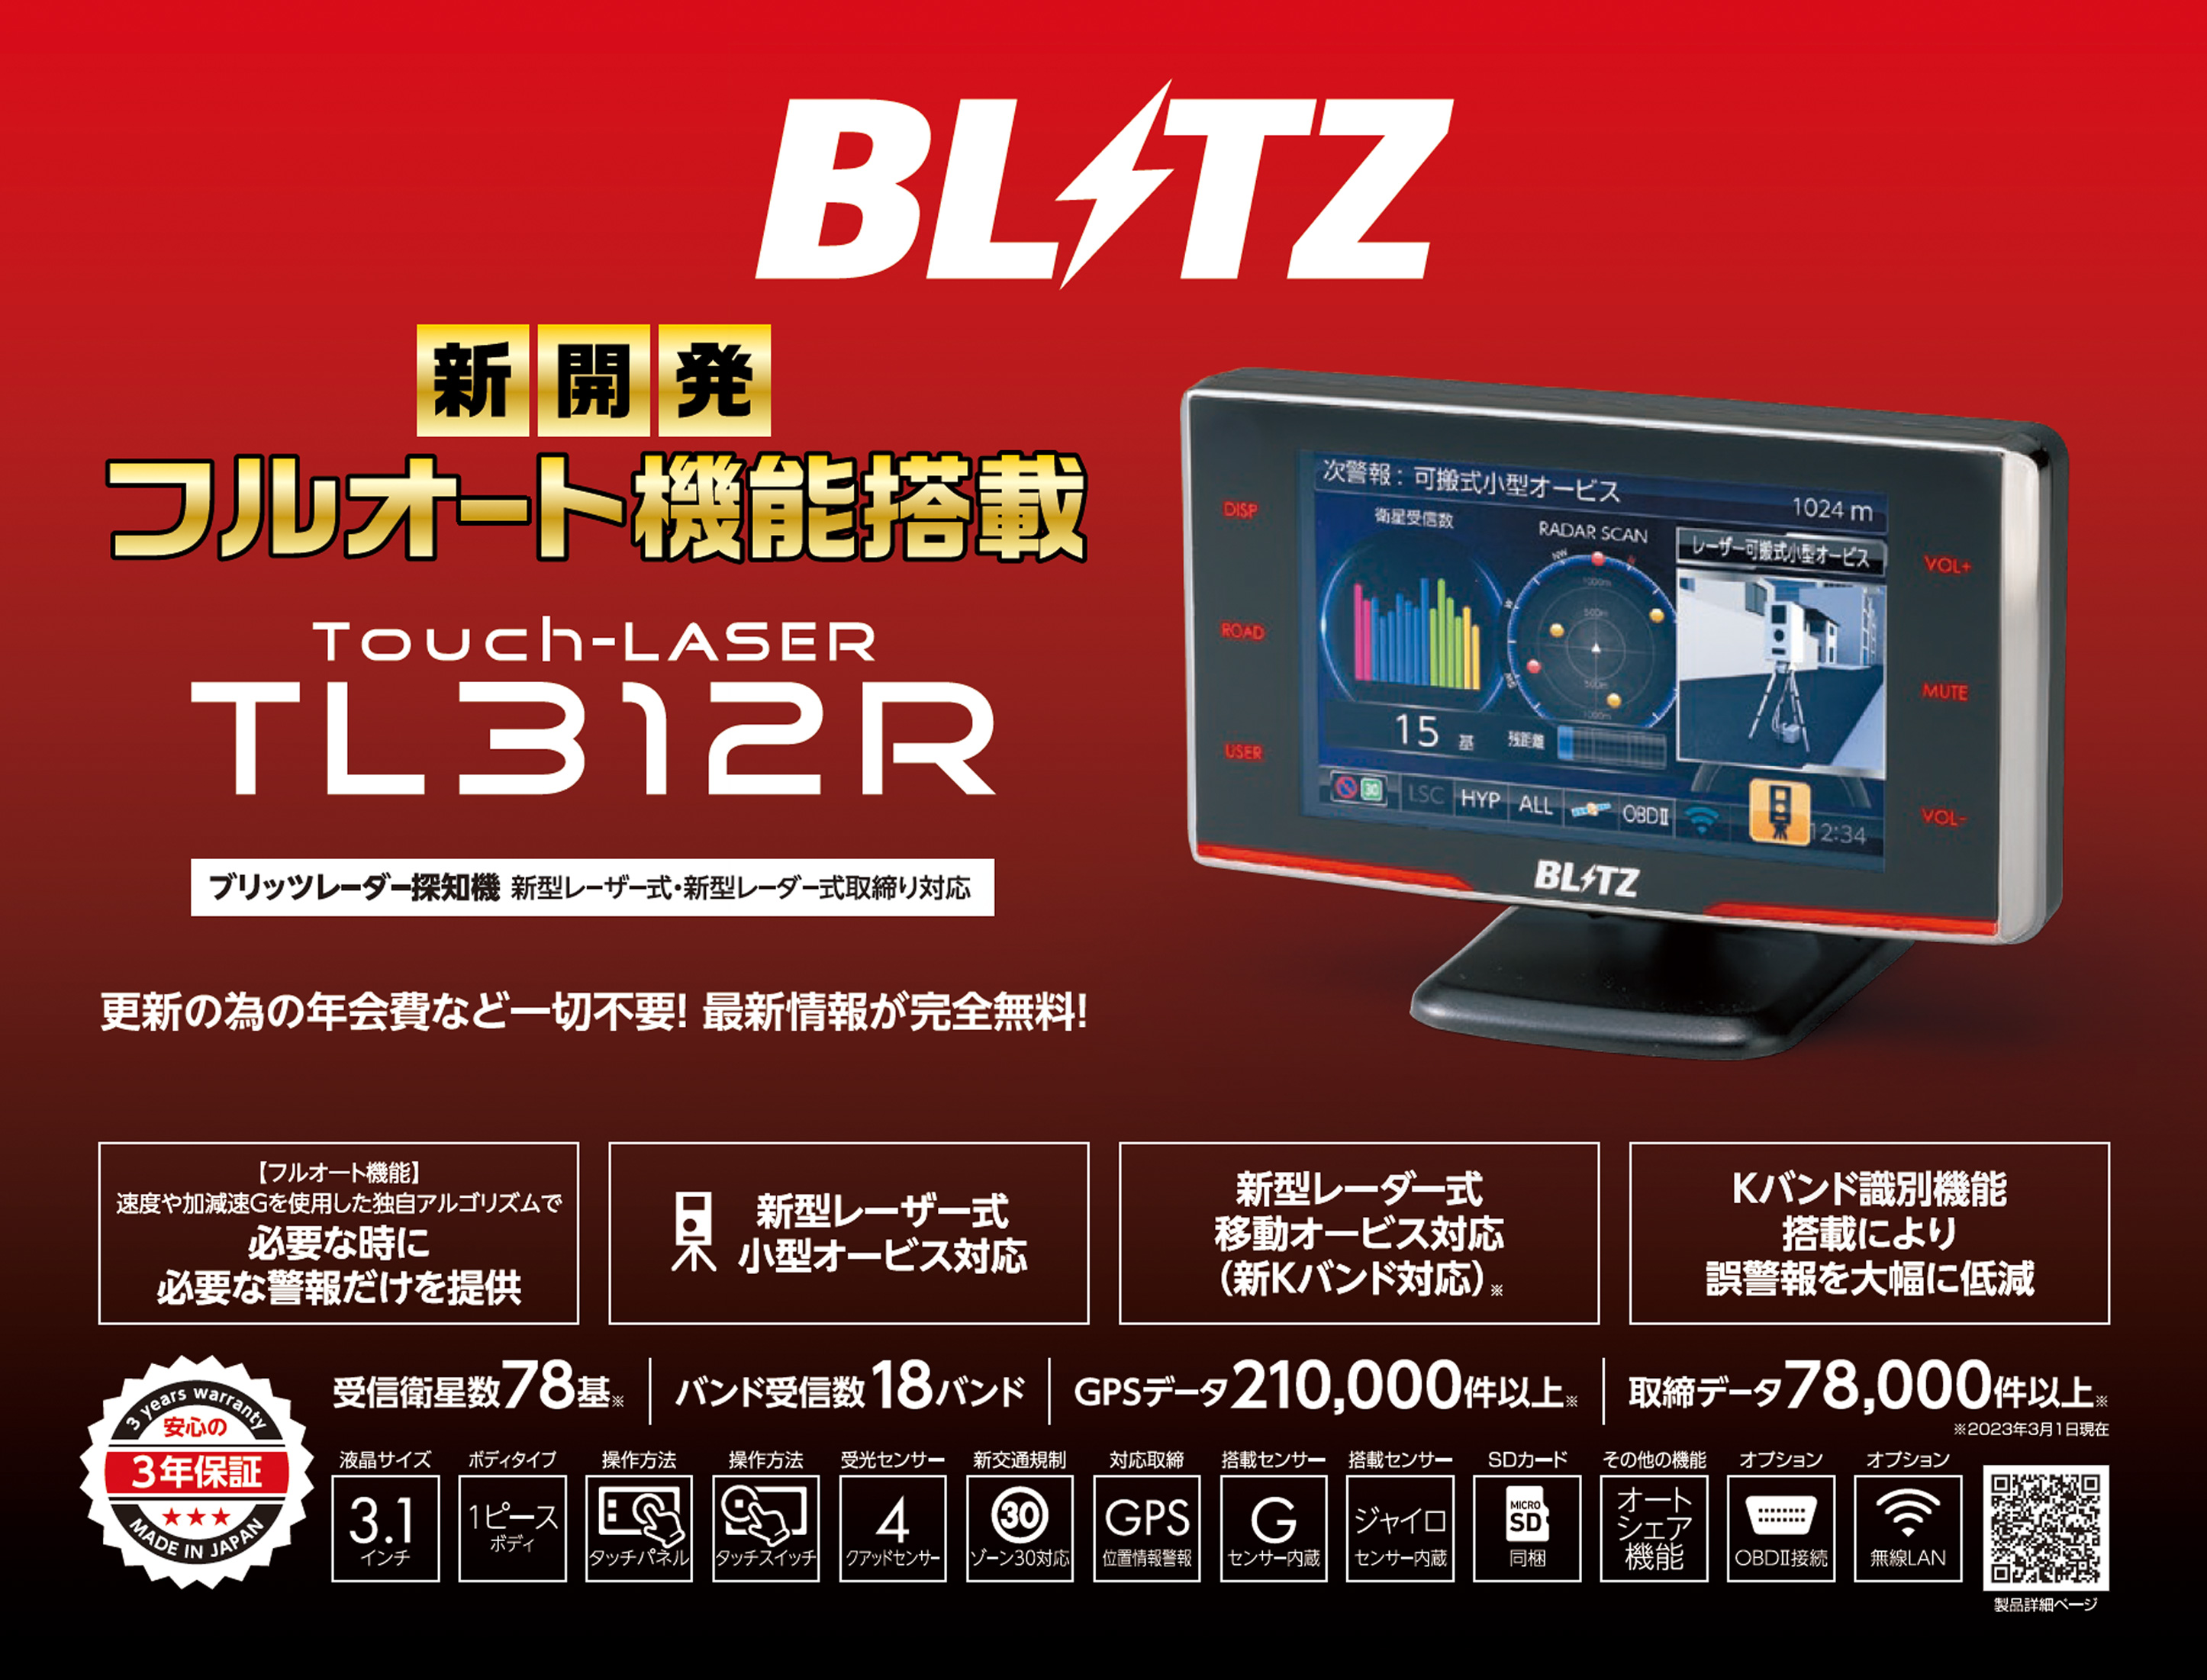 ブリッツ レーダー探知機 TL312R Touch-LASER OBD2 無線LAN対応 3.1 